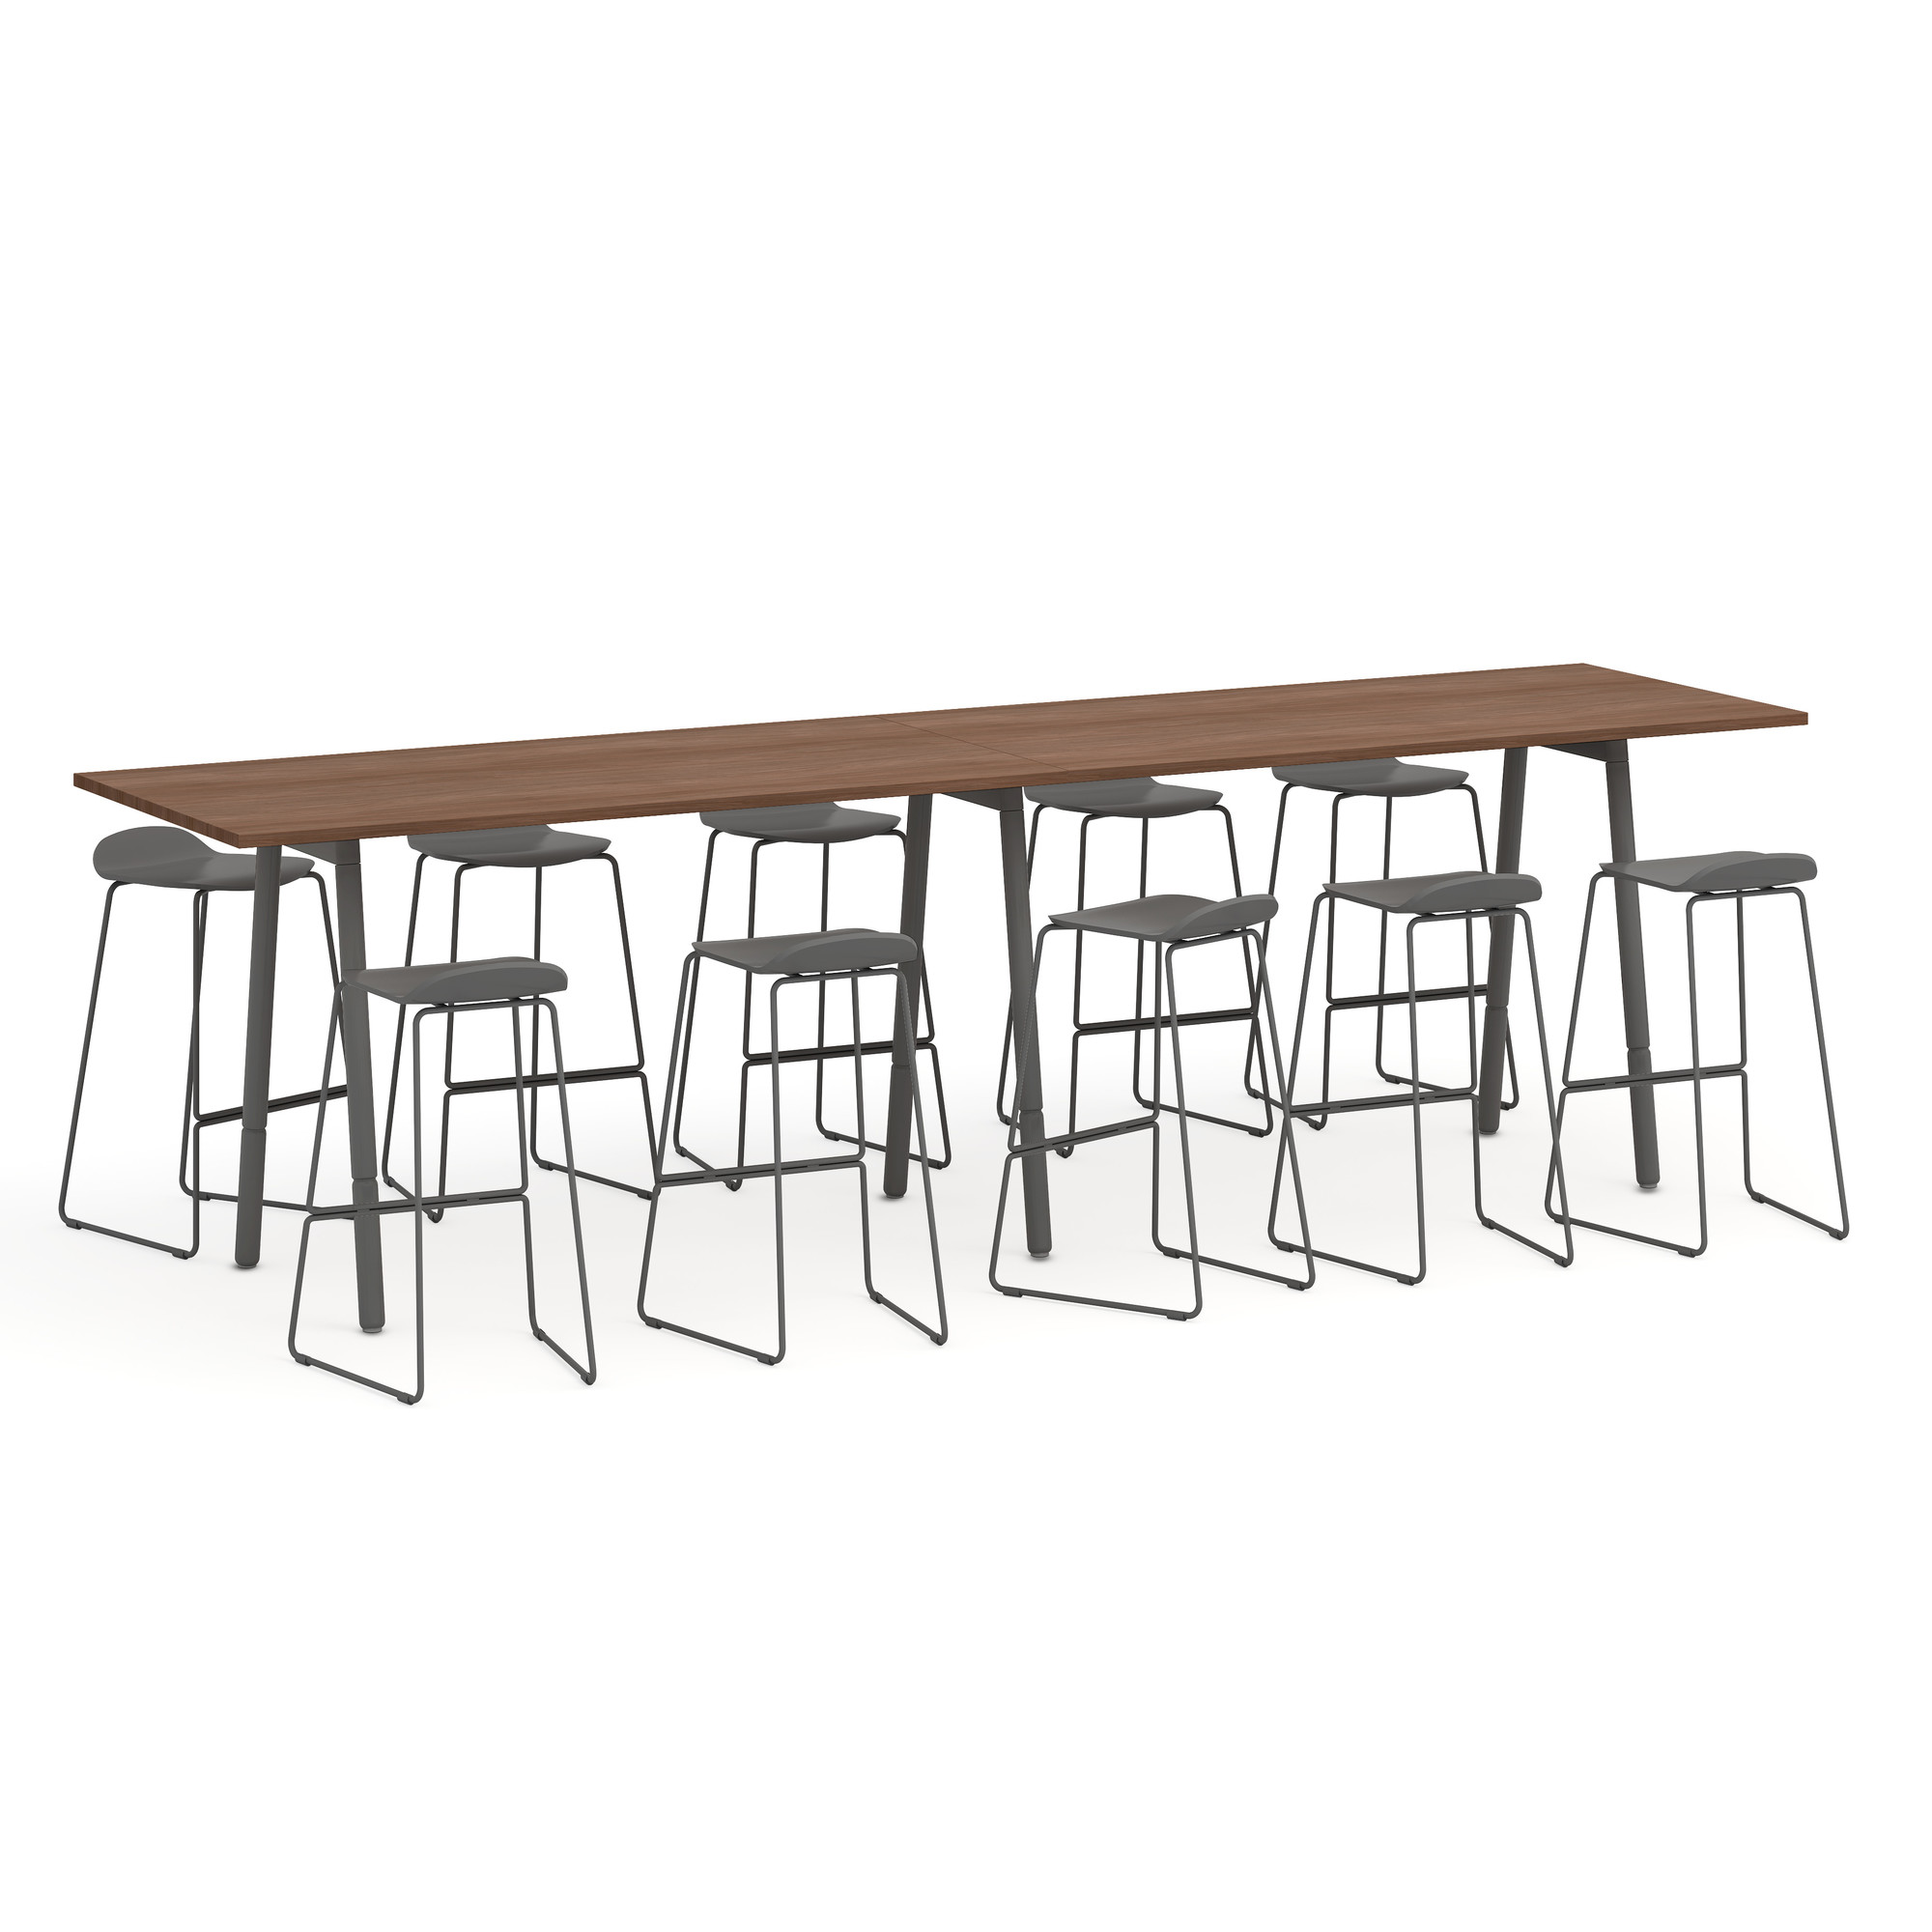 Series A Standing Table, Walnut, 144x36", Charcoal Legs,Walnut,hi-res